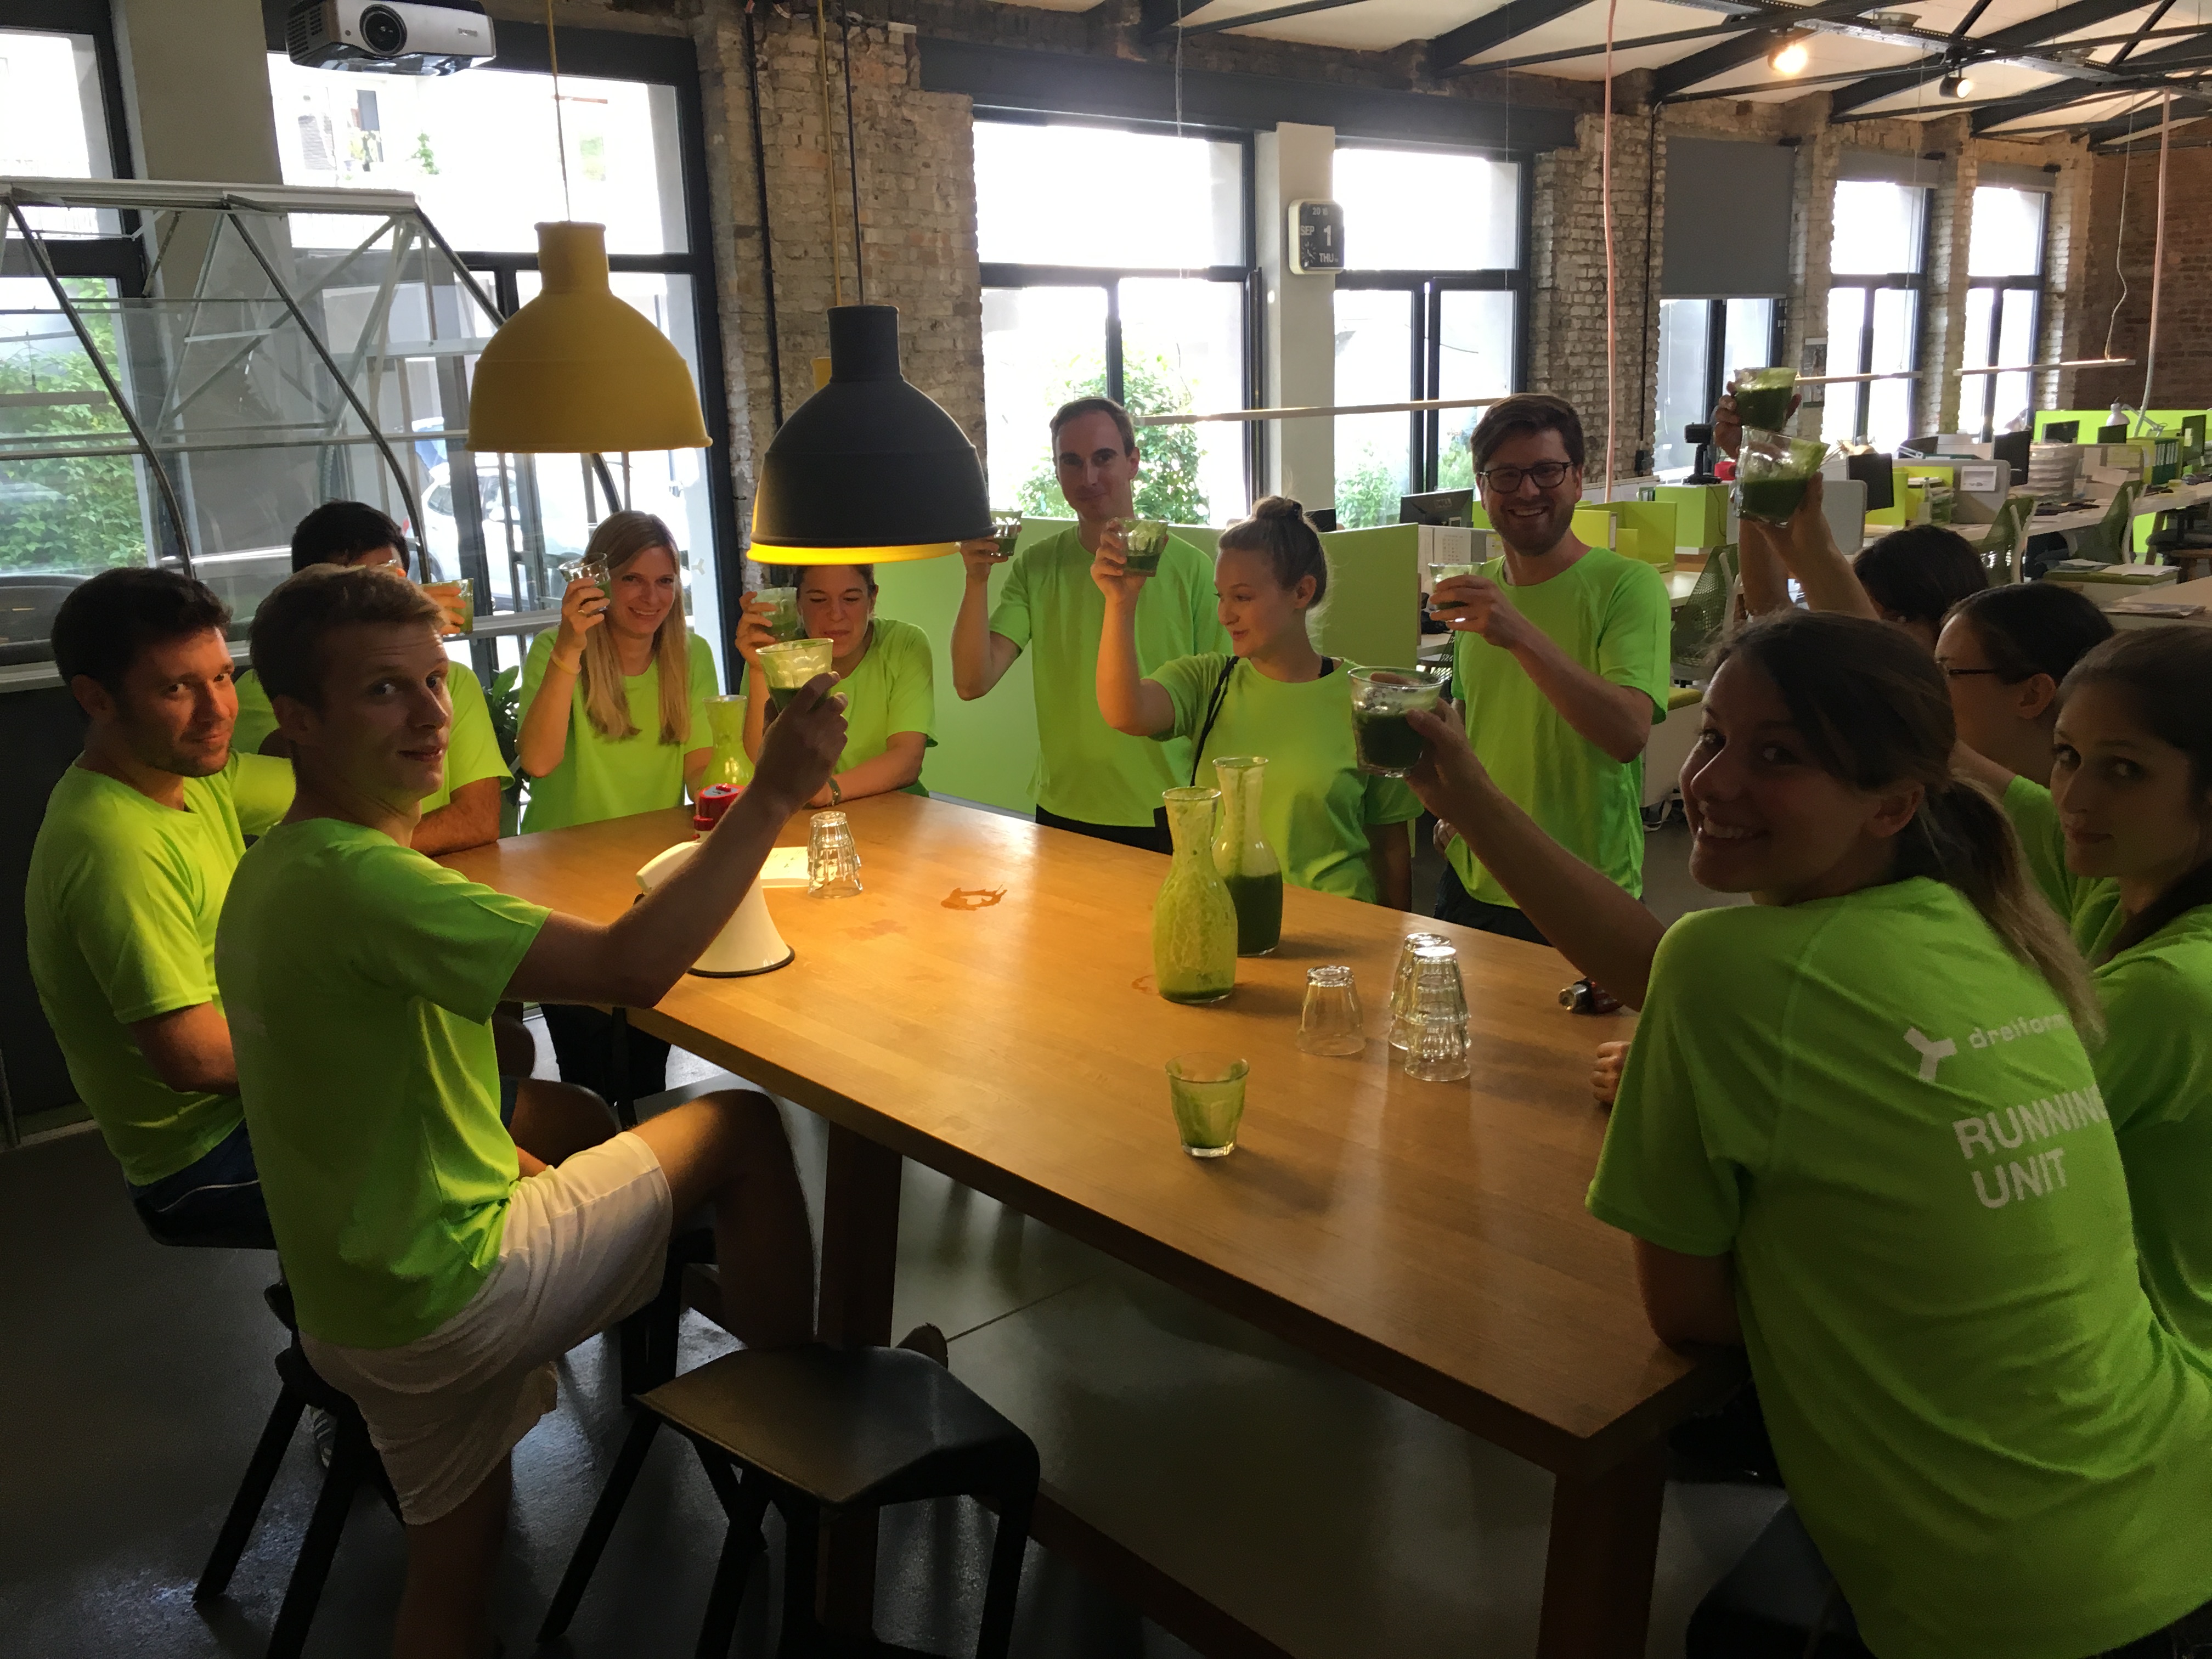 photo Gruppenbld team dreiform kitchen green jerseys to drink